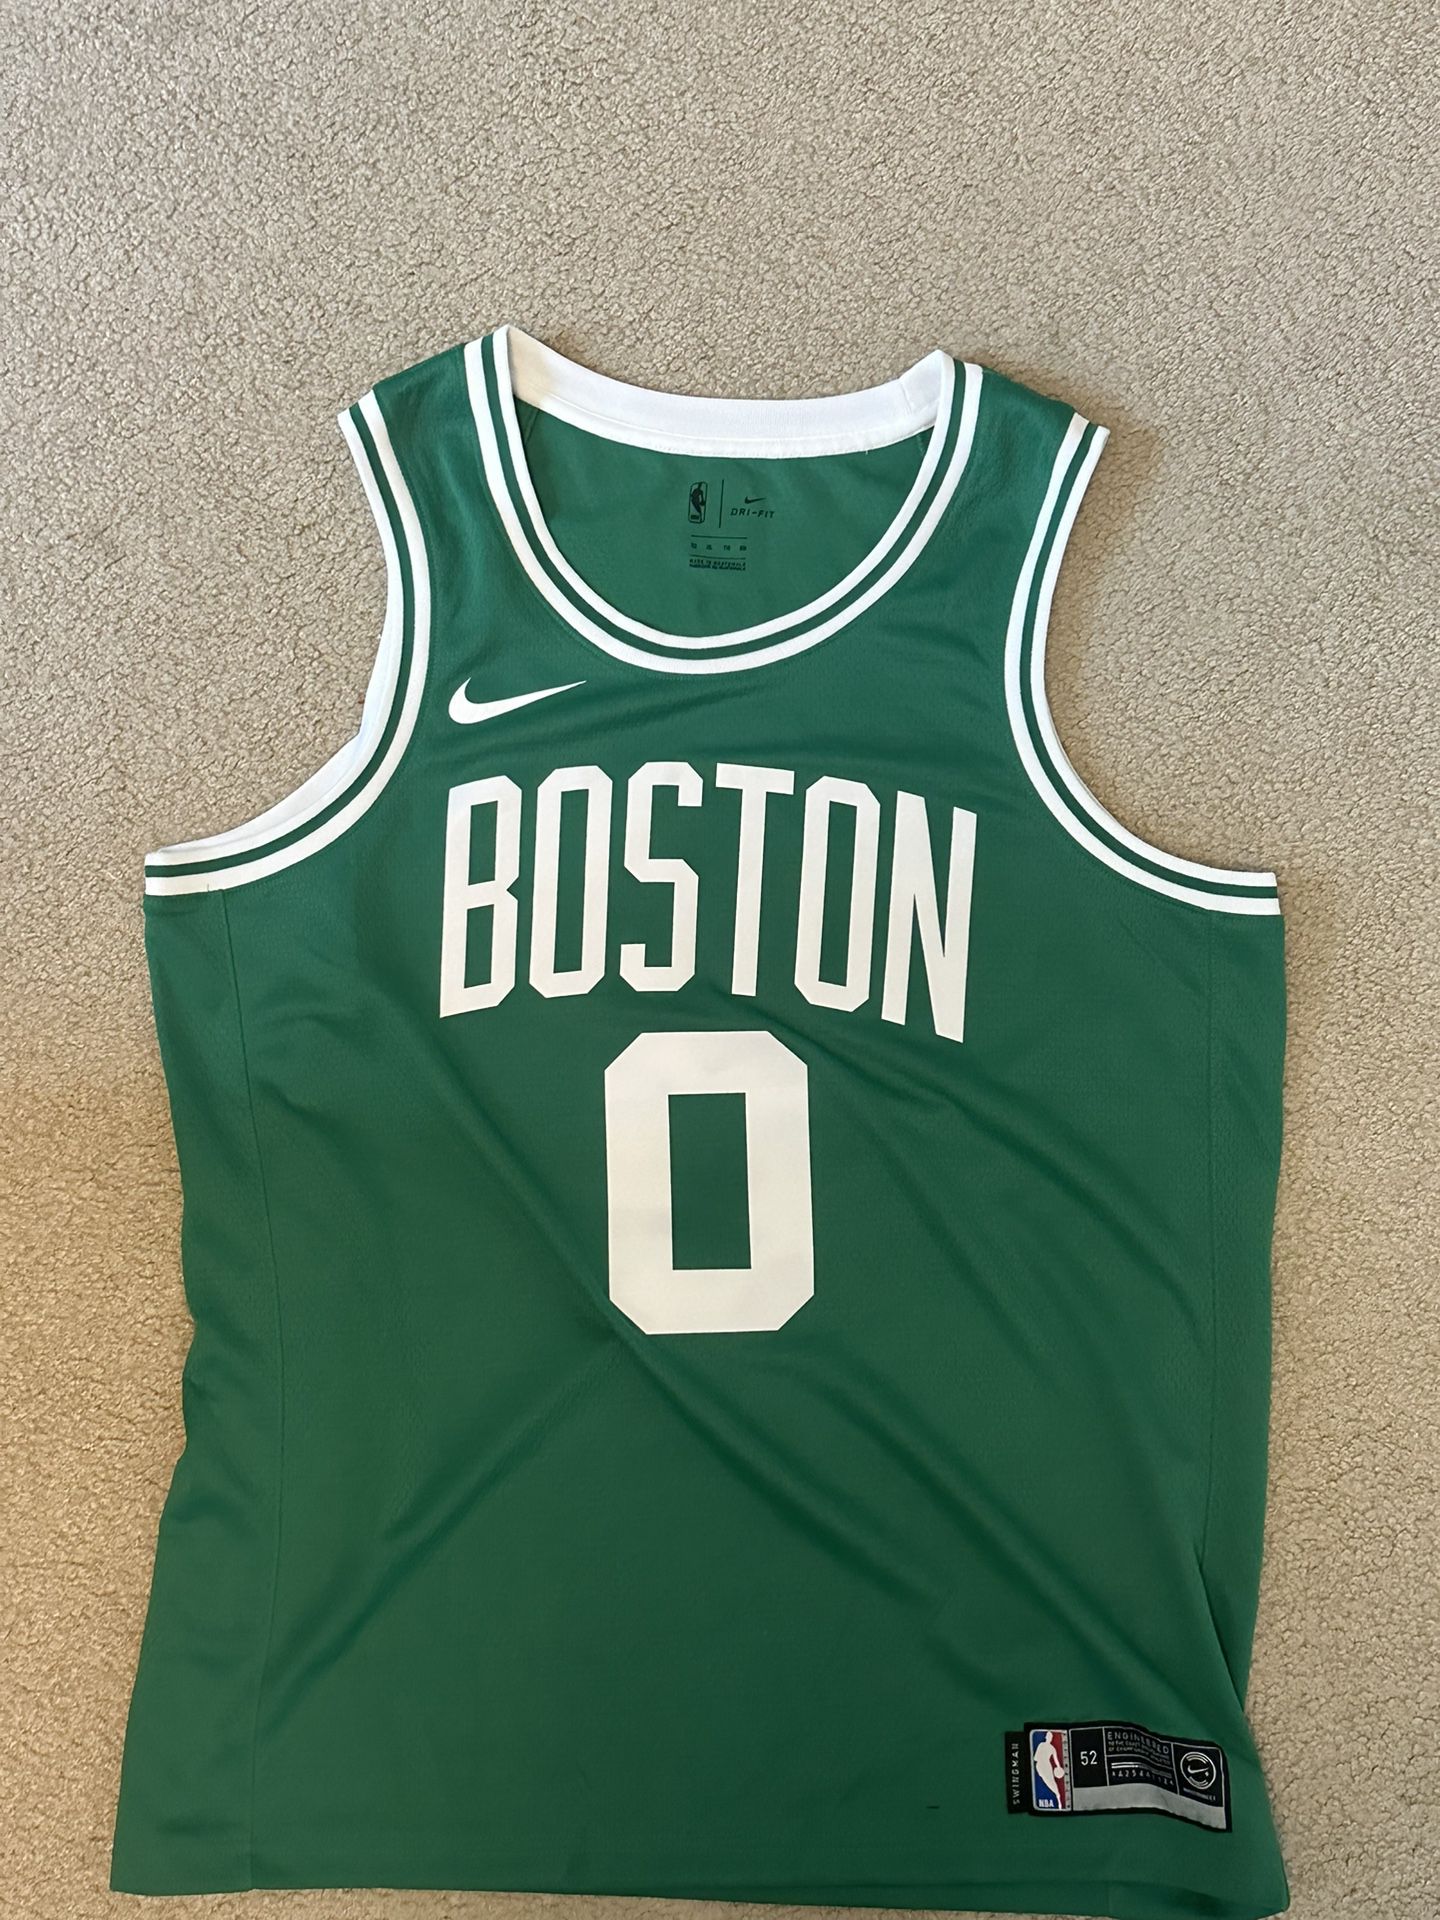 Jayson Tatum Boston Celtics Jersey Size XL 